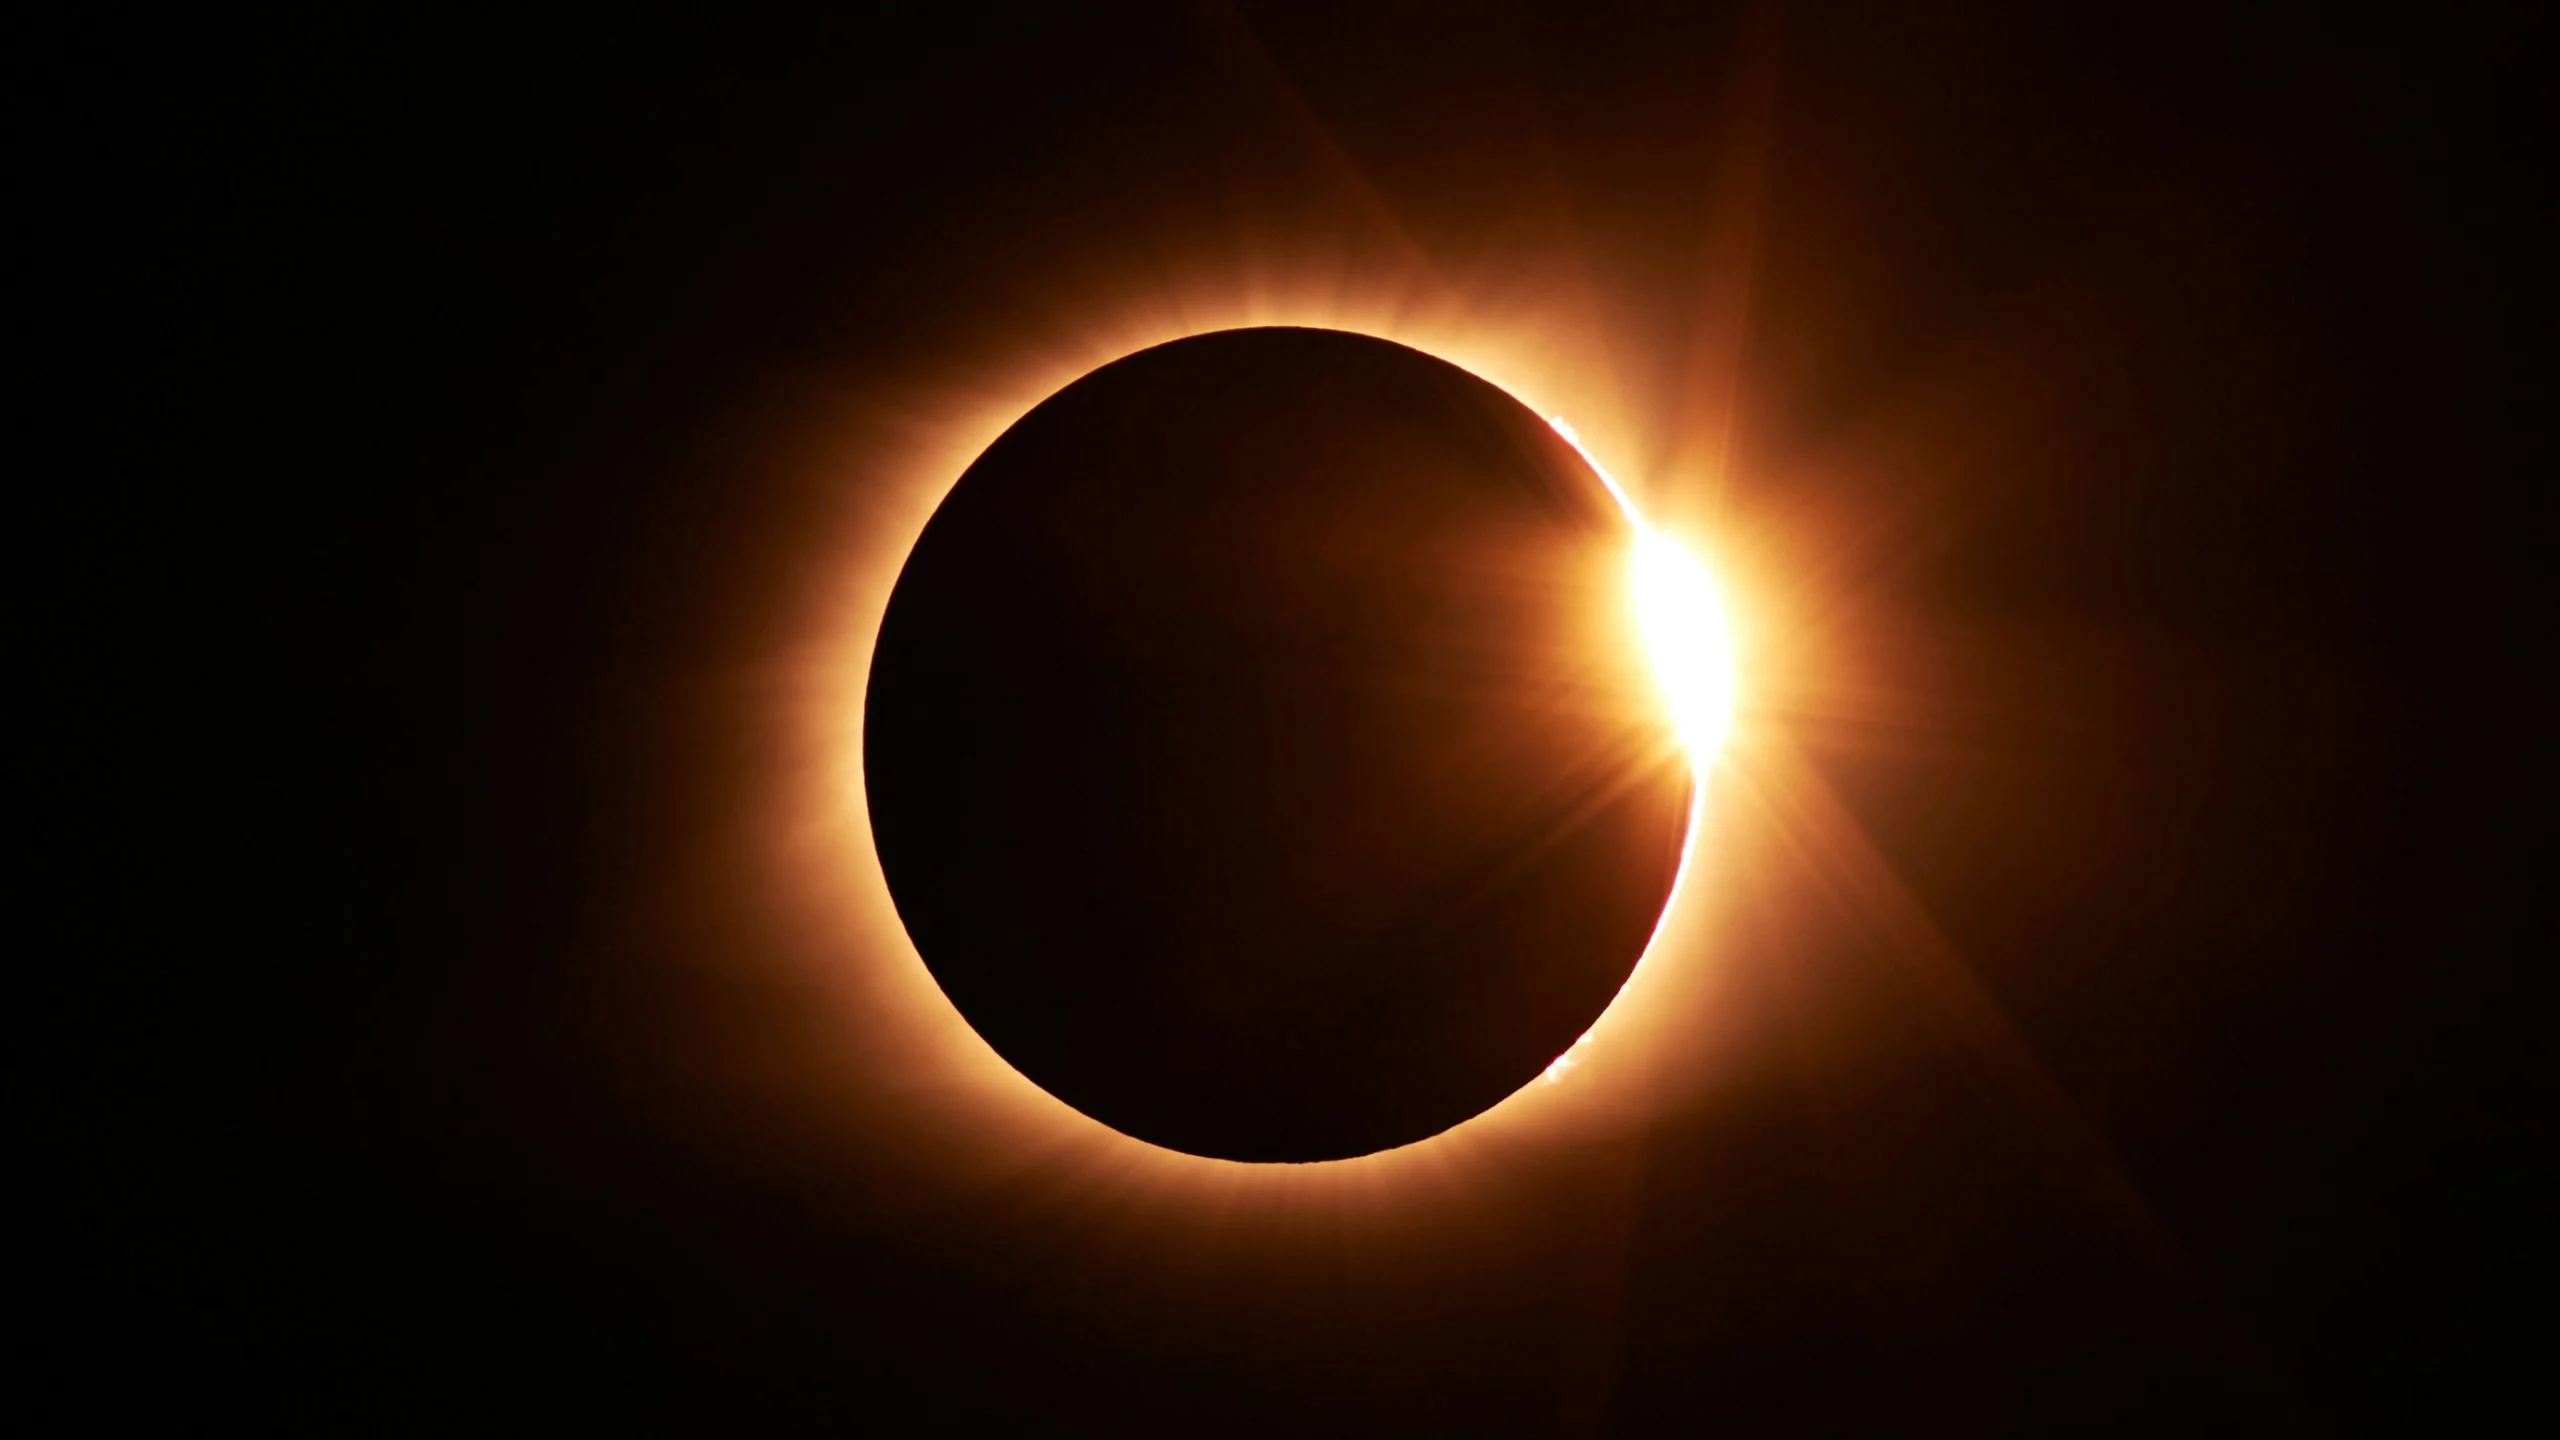 ¿Ya sabes dónde ver el Eclipse? Este es el mejor lugar del mundo según la NASA